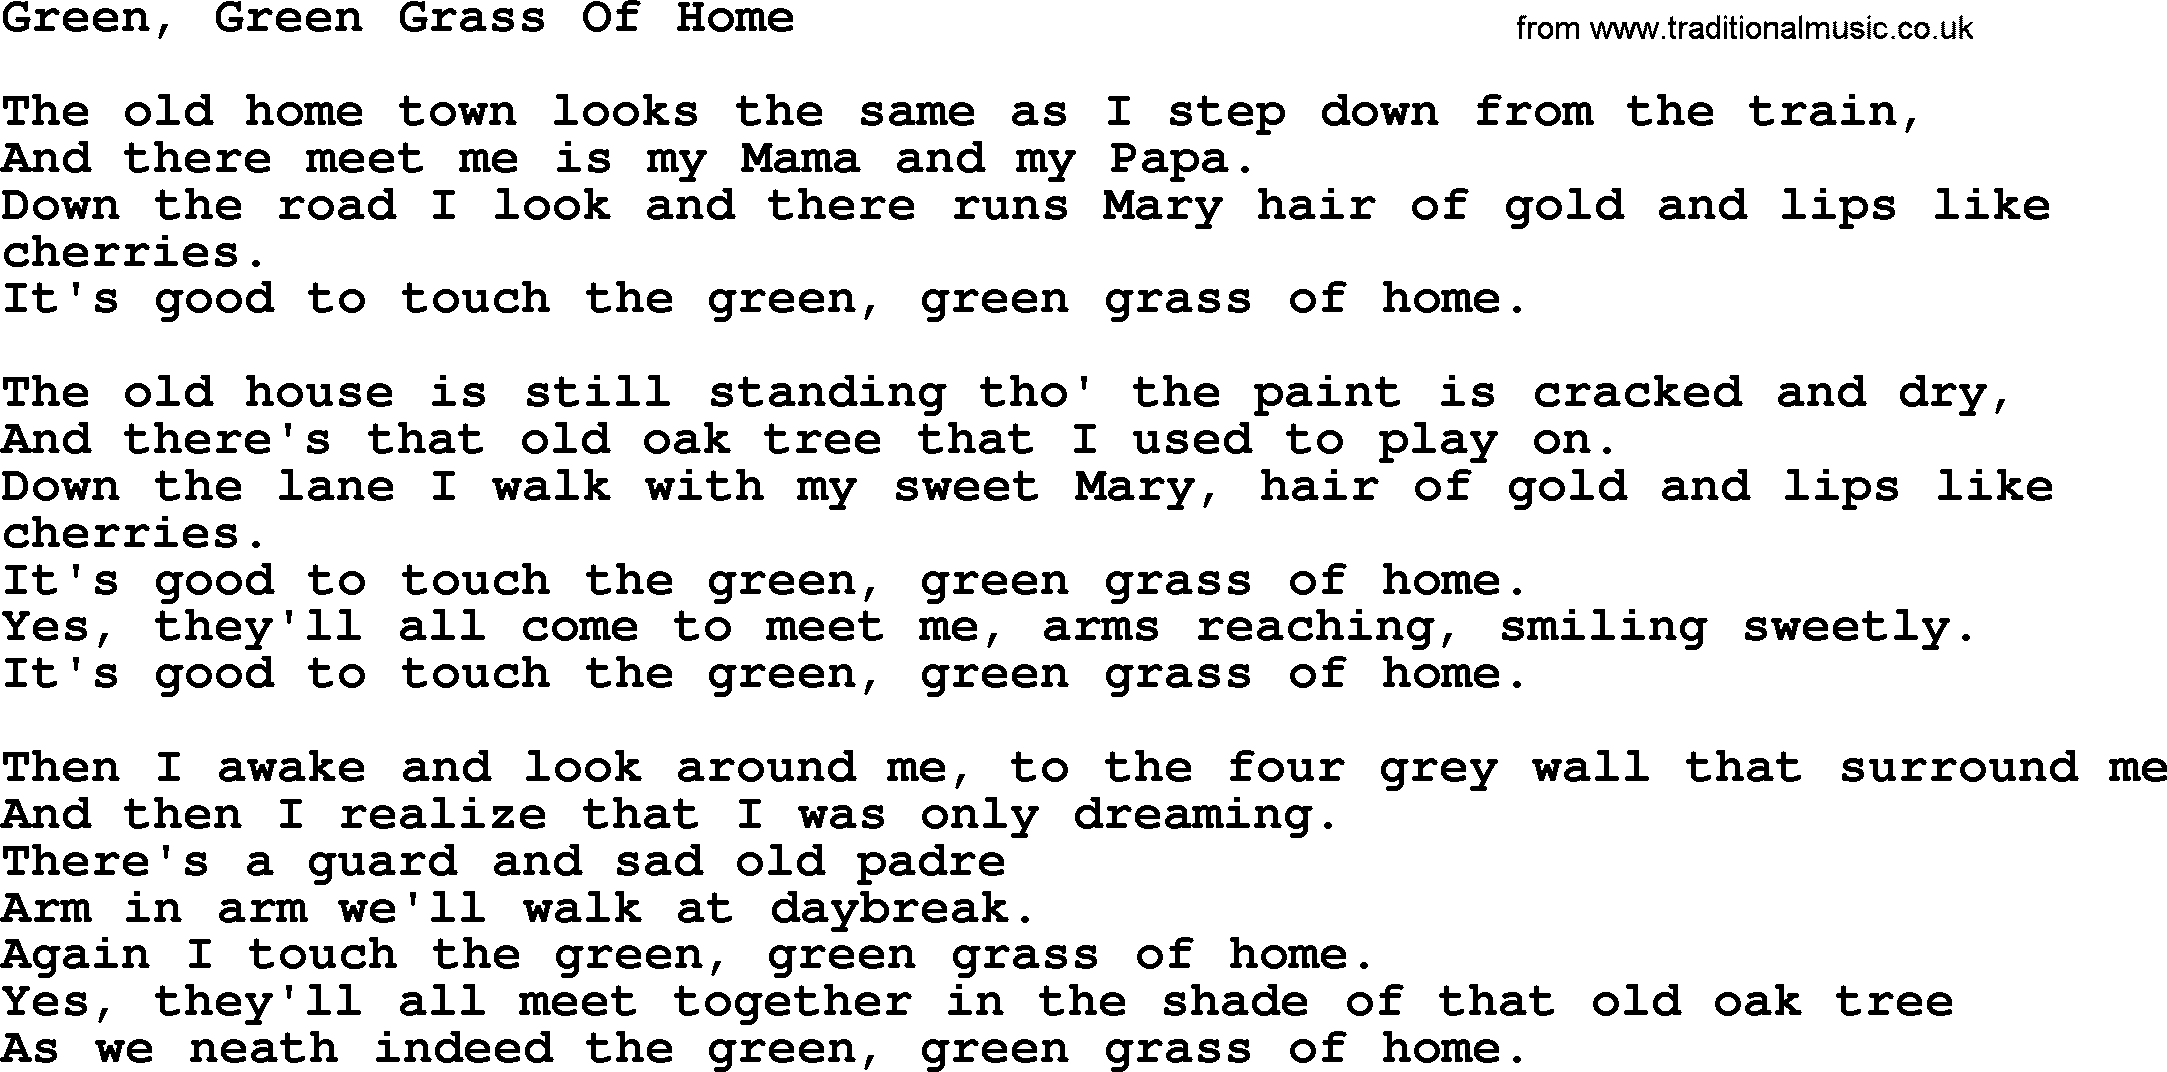 Joan Baez song Green, Green Grass Of Home, lyrics